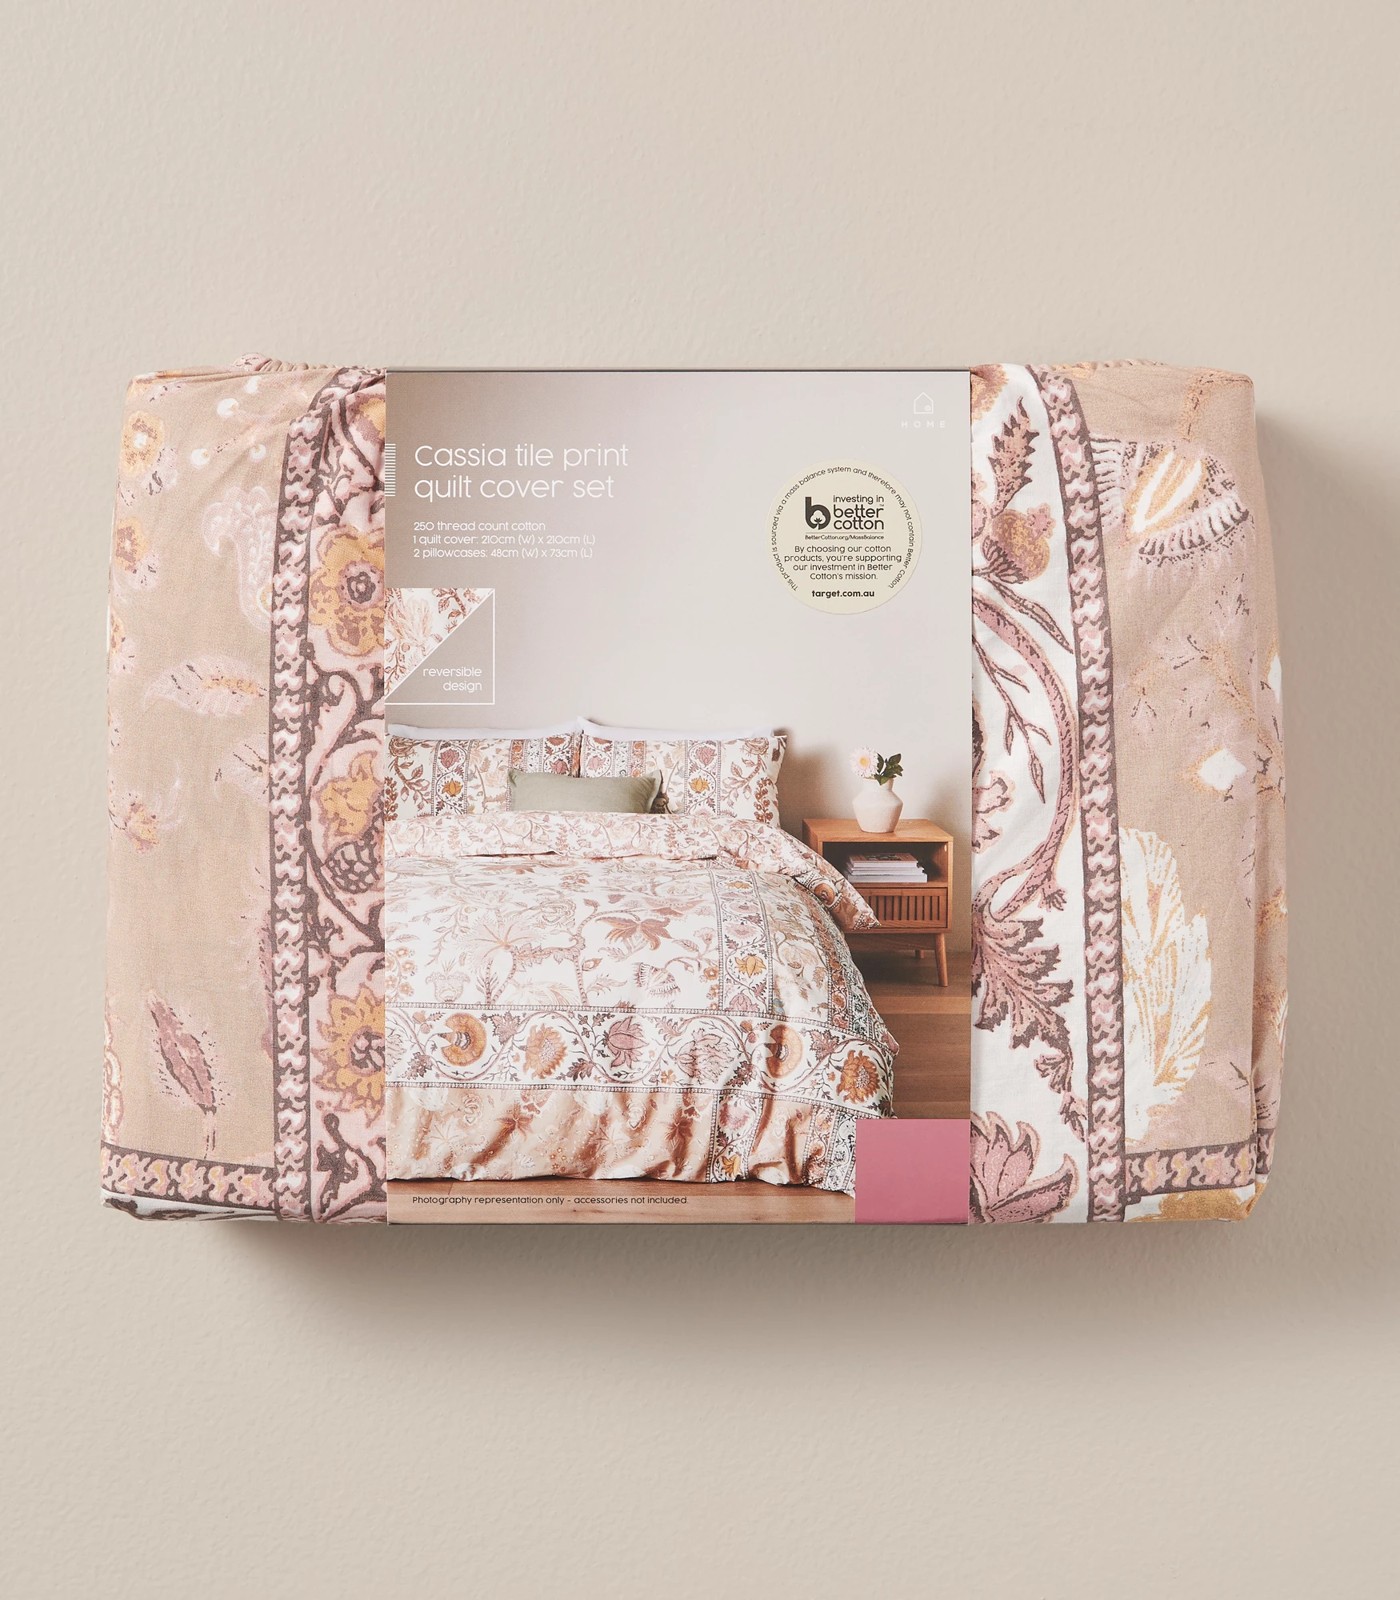 Cassia Tile Print Quilt Cover Set | Target Australia